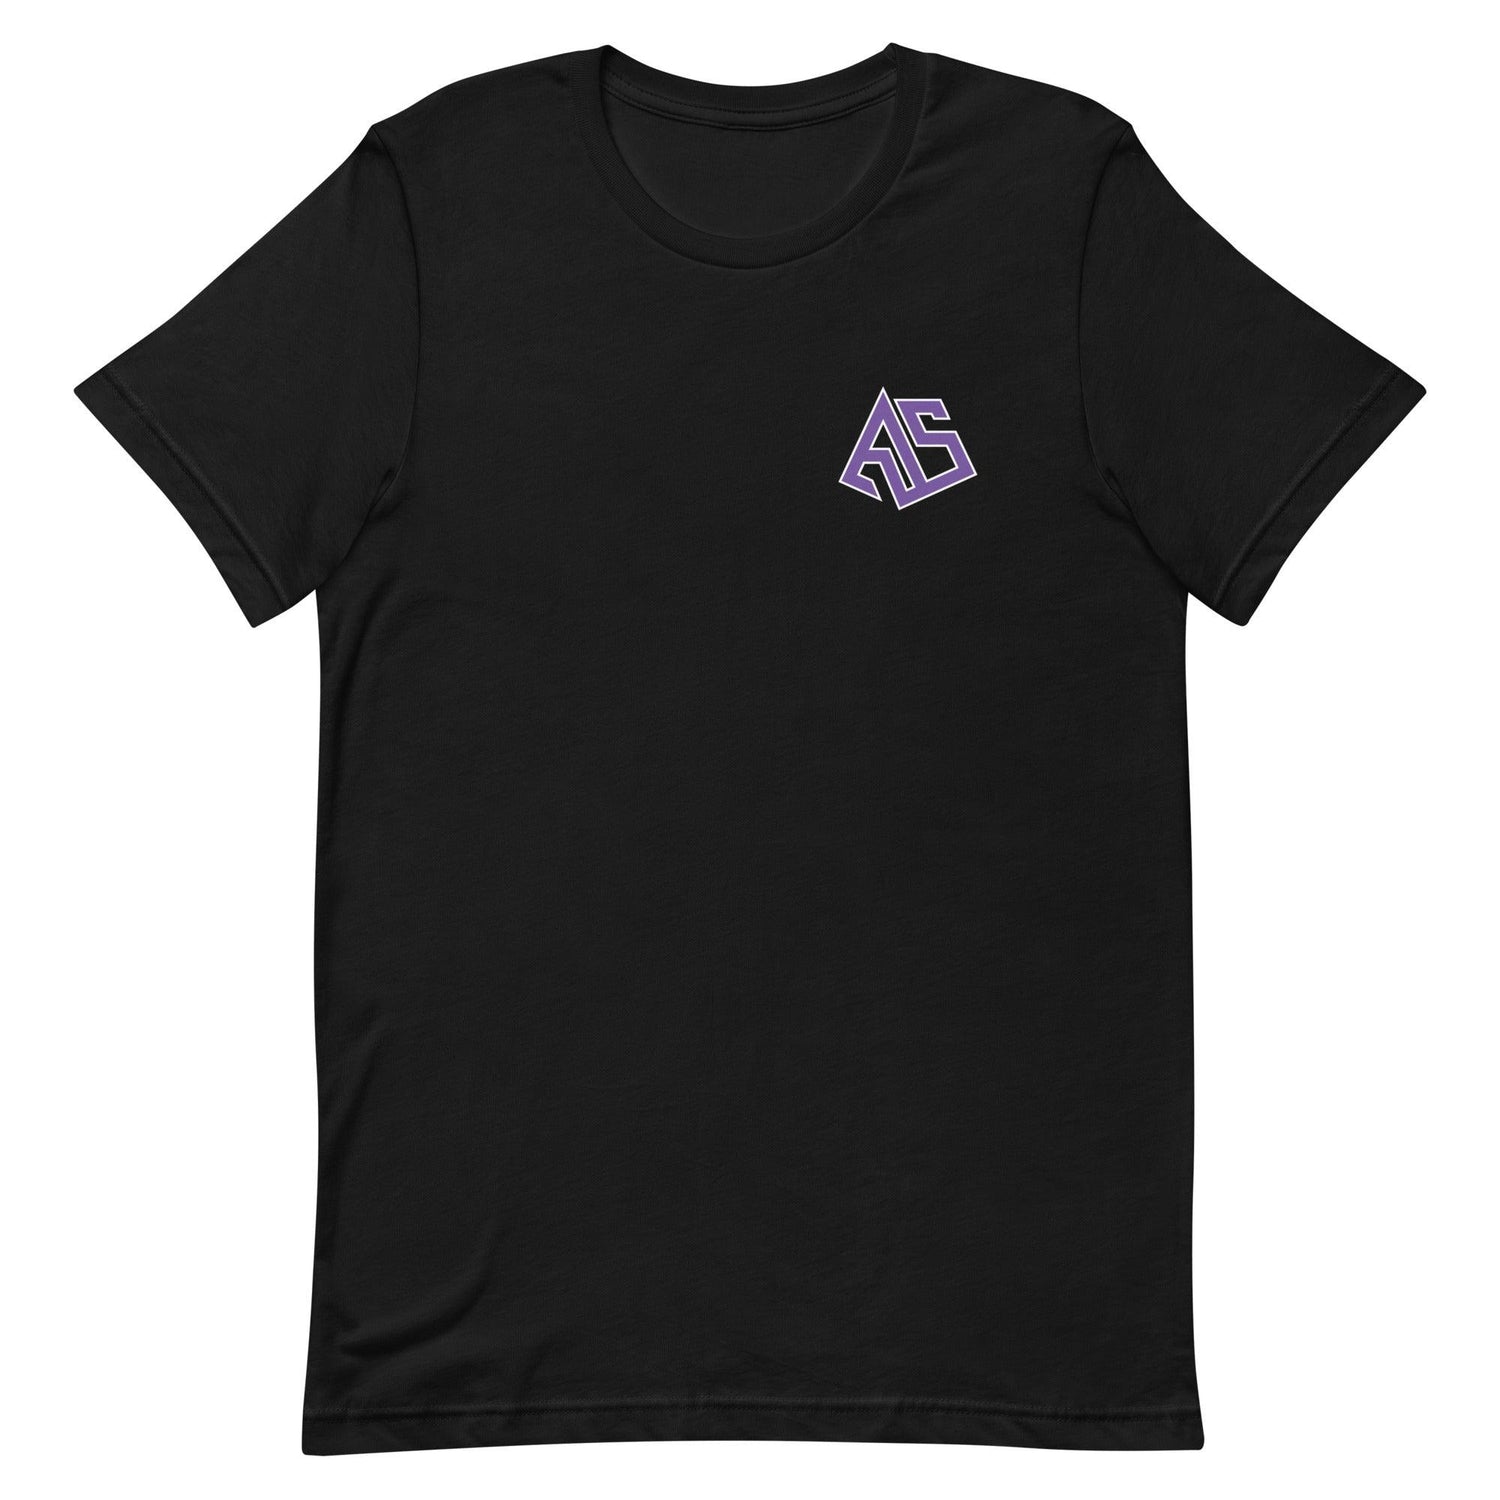 Asa Newsom "Essential" t-shirt - Fan Arch